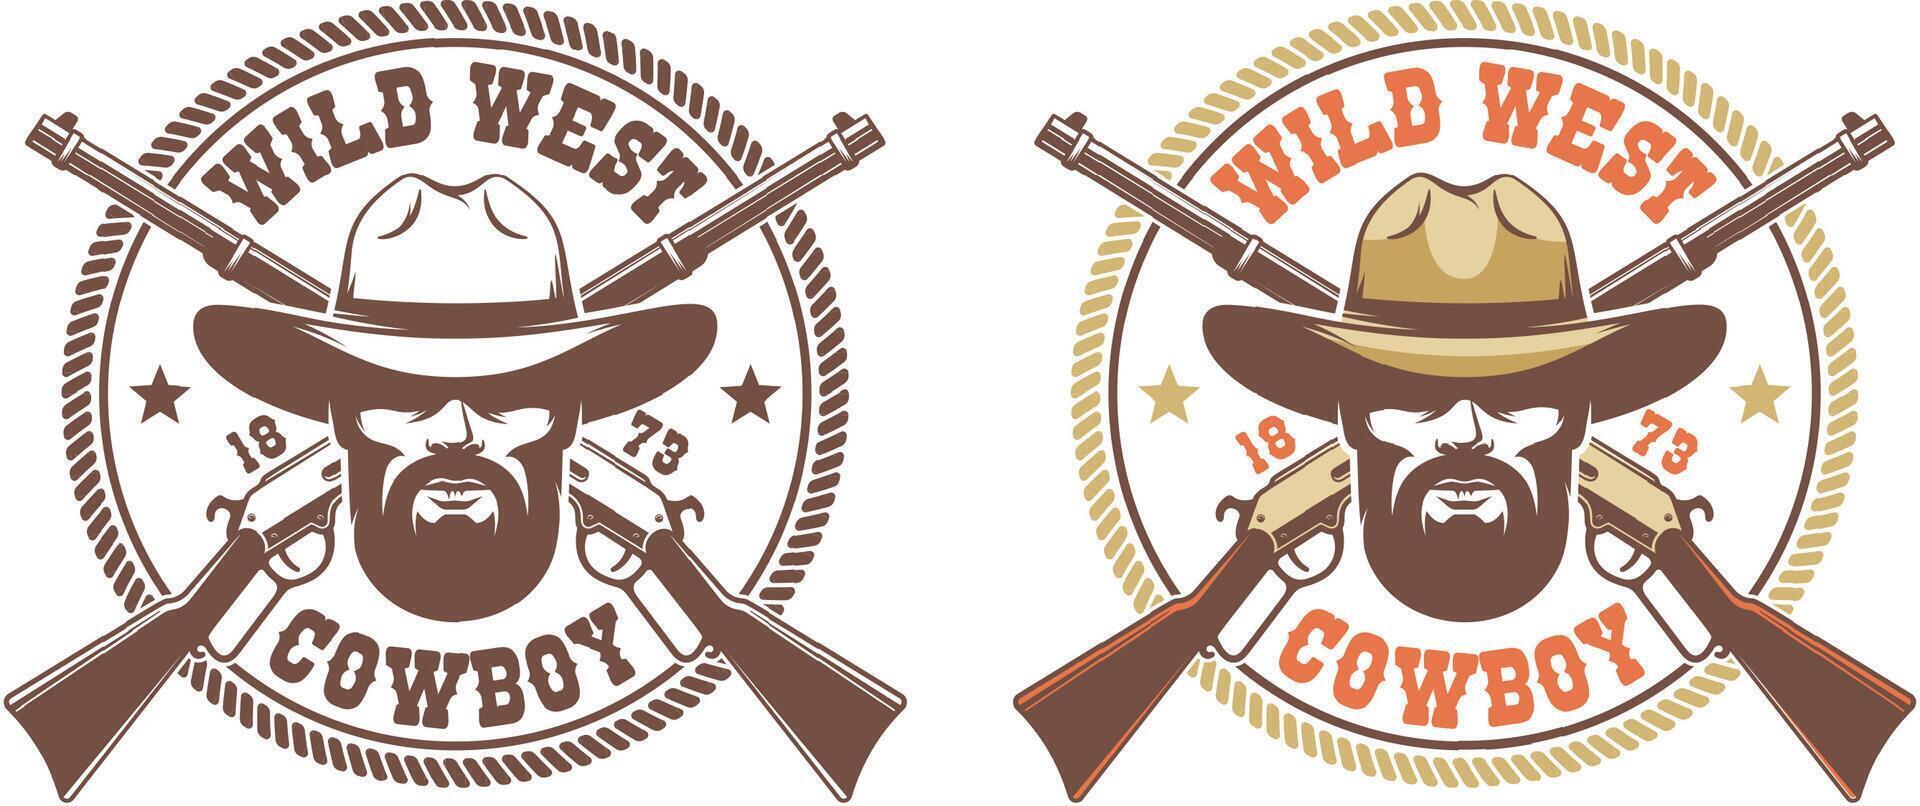 selvagem oeste retro logotipo - vaqueiro dentro chapéu com cruzado armas Winchesters vetor